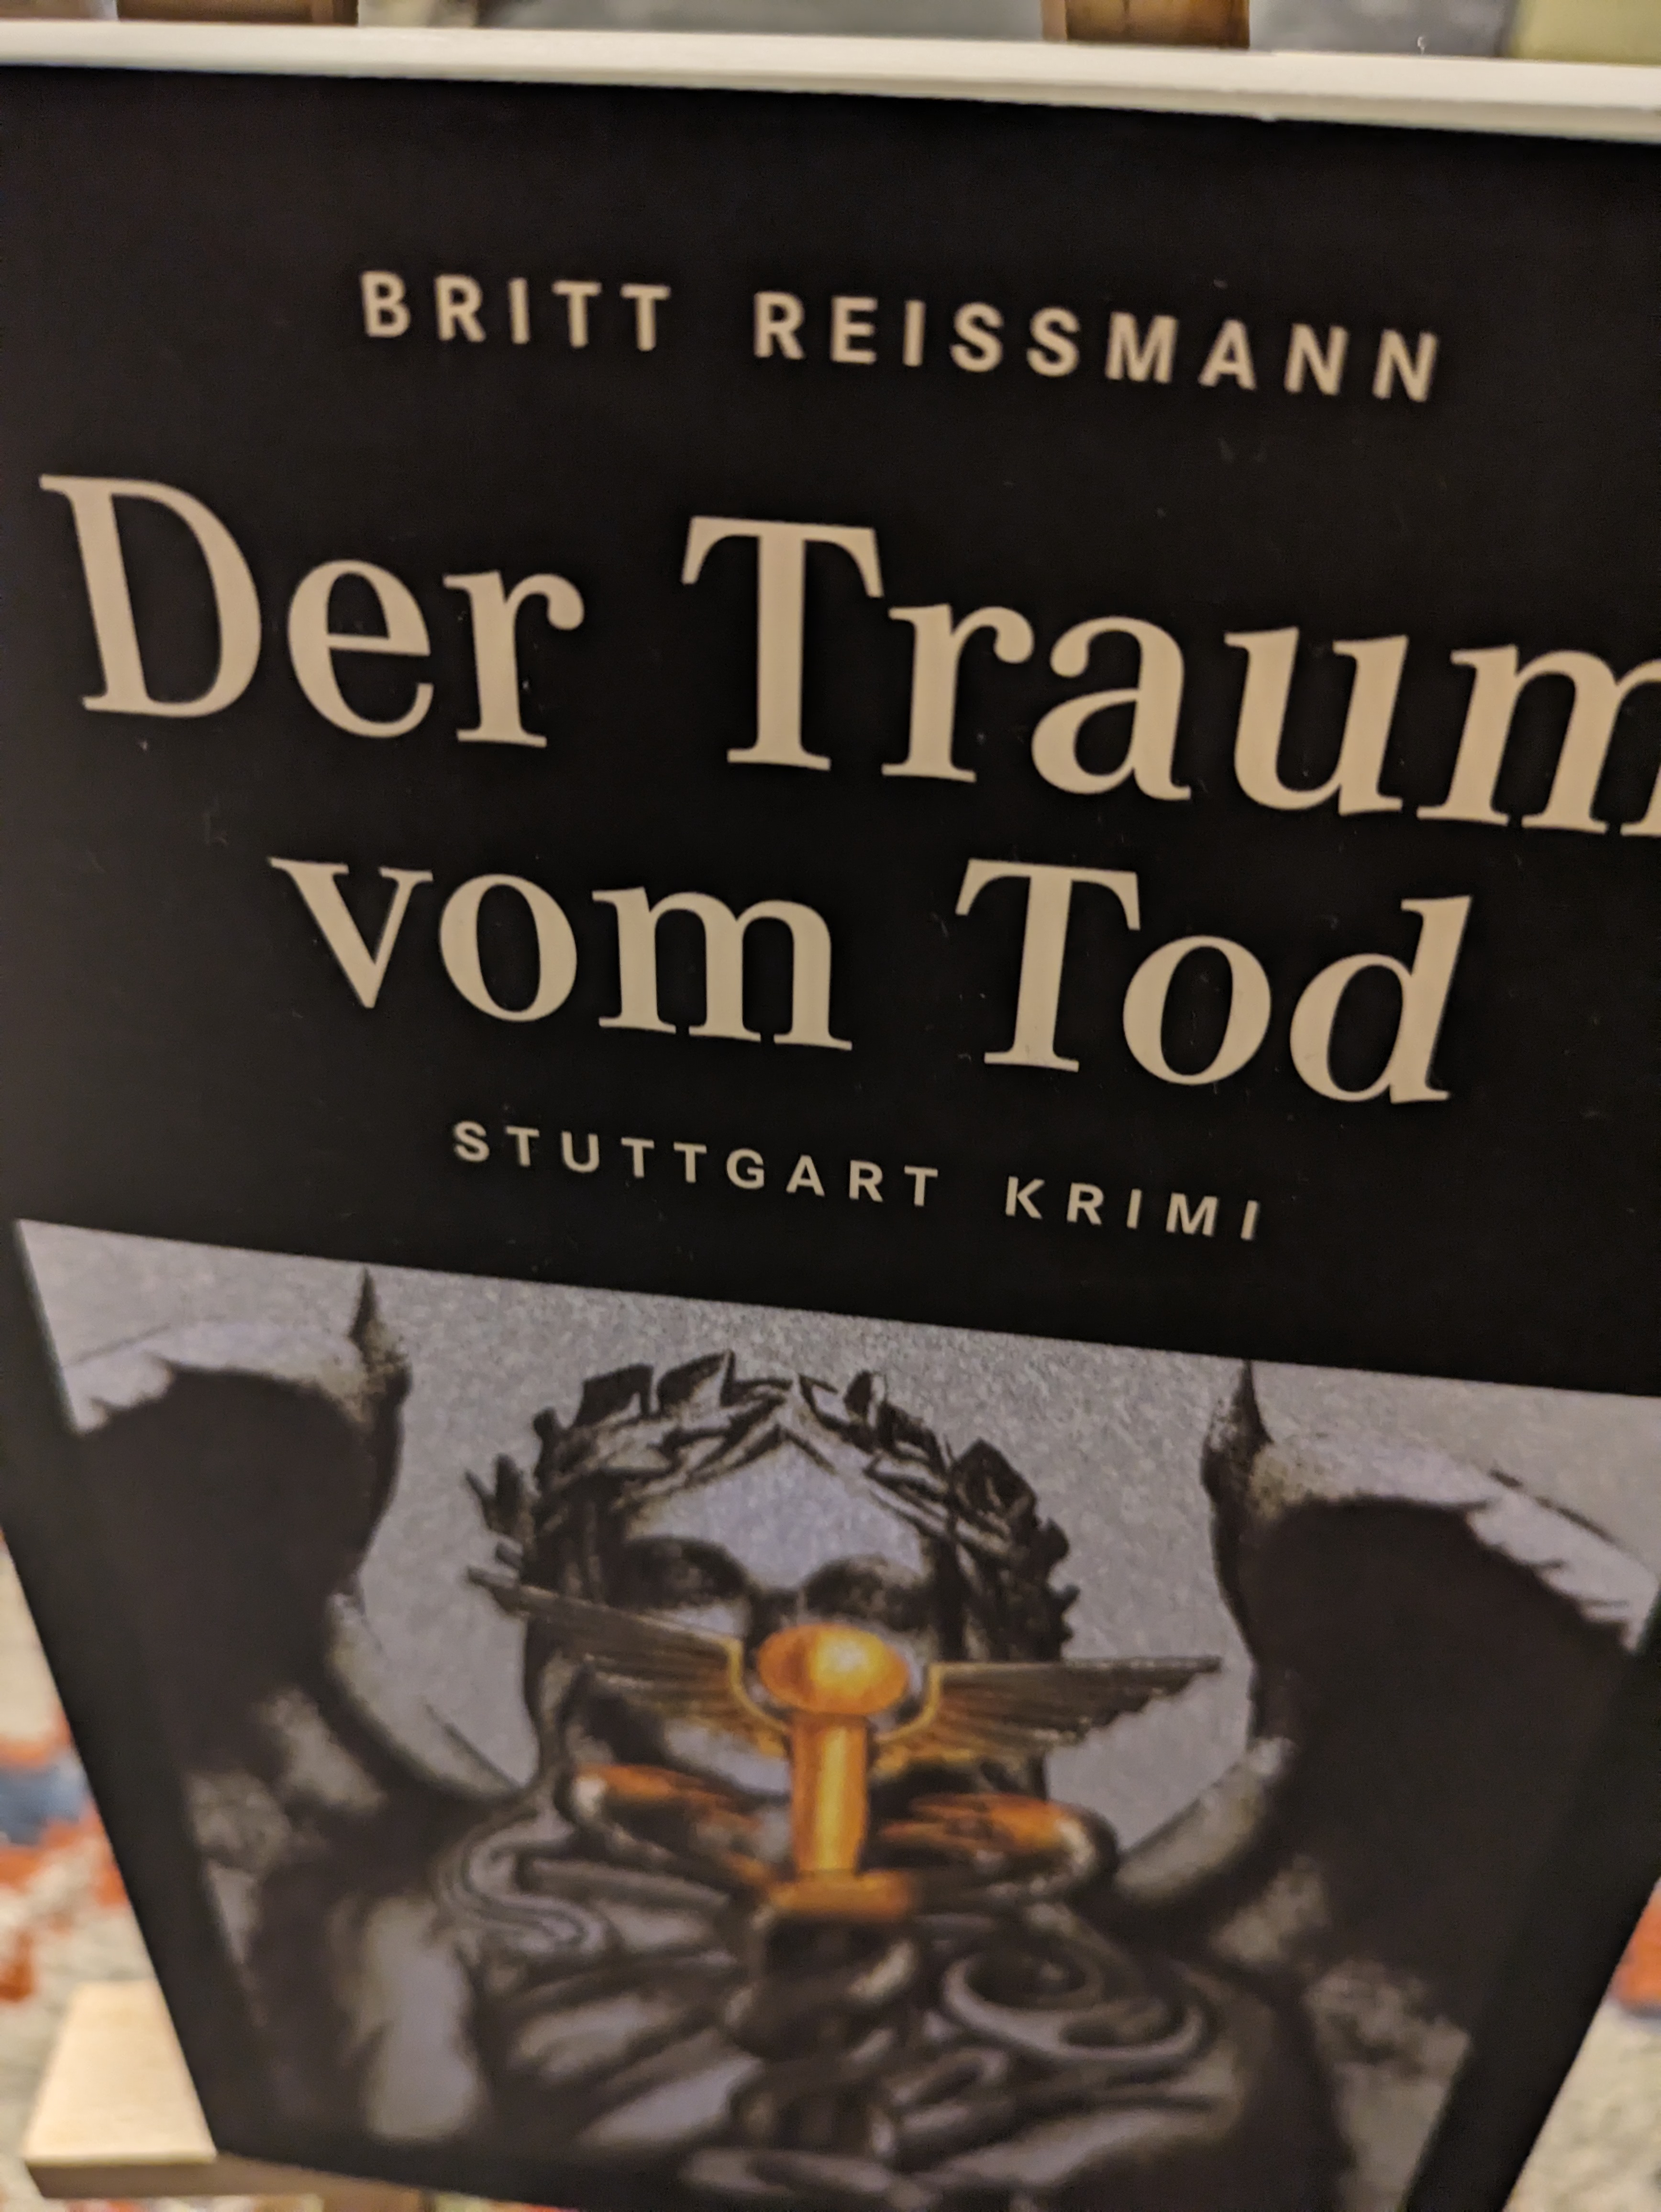 Der Traum vom Tod, Stuttgart Krimi - Reissmann Britt